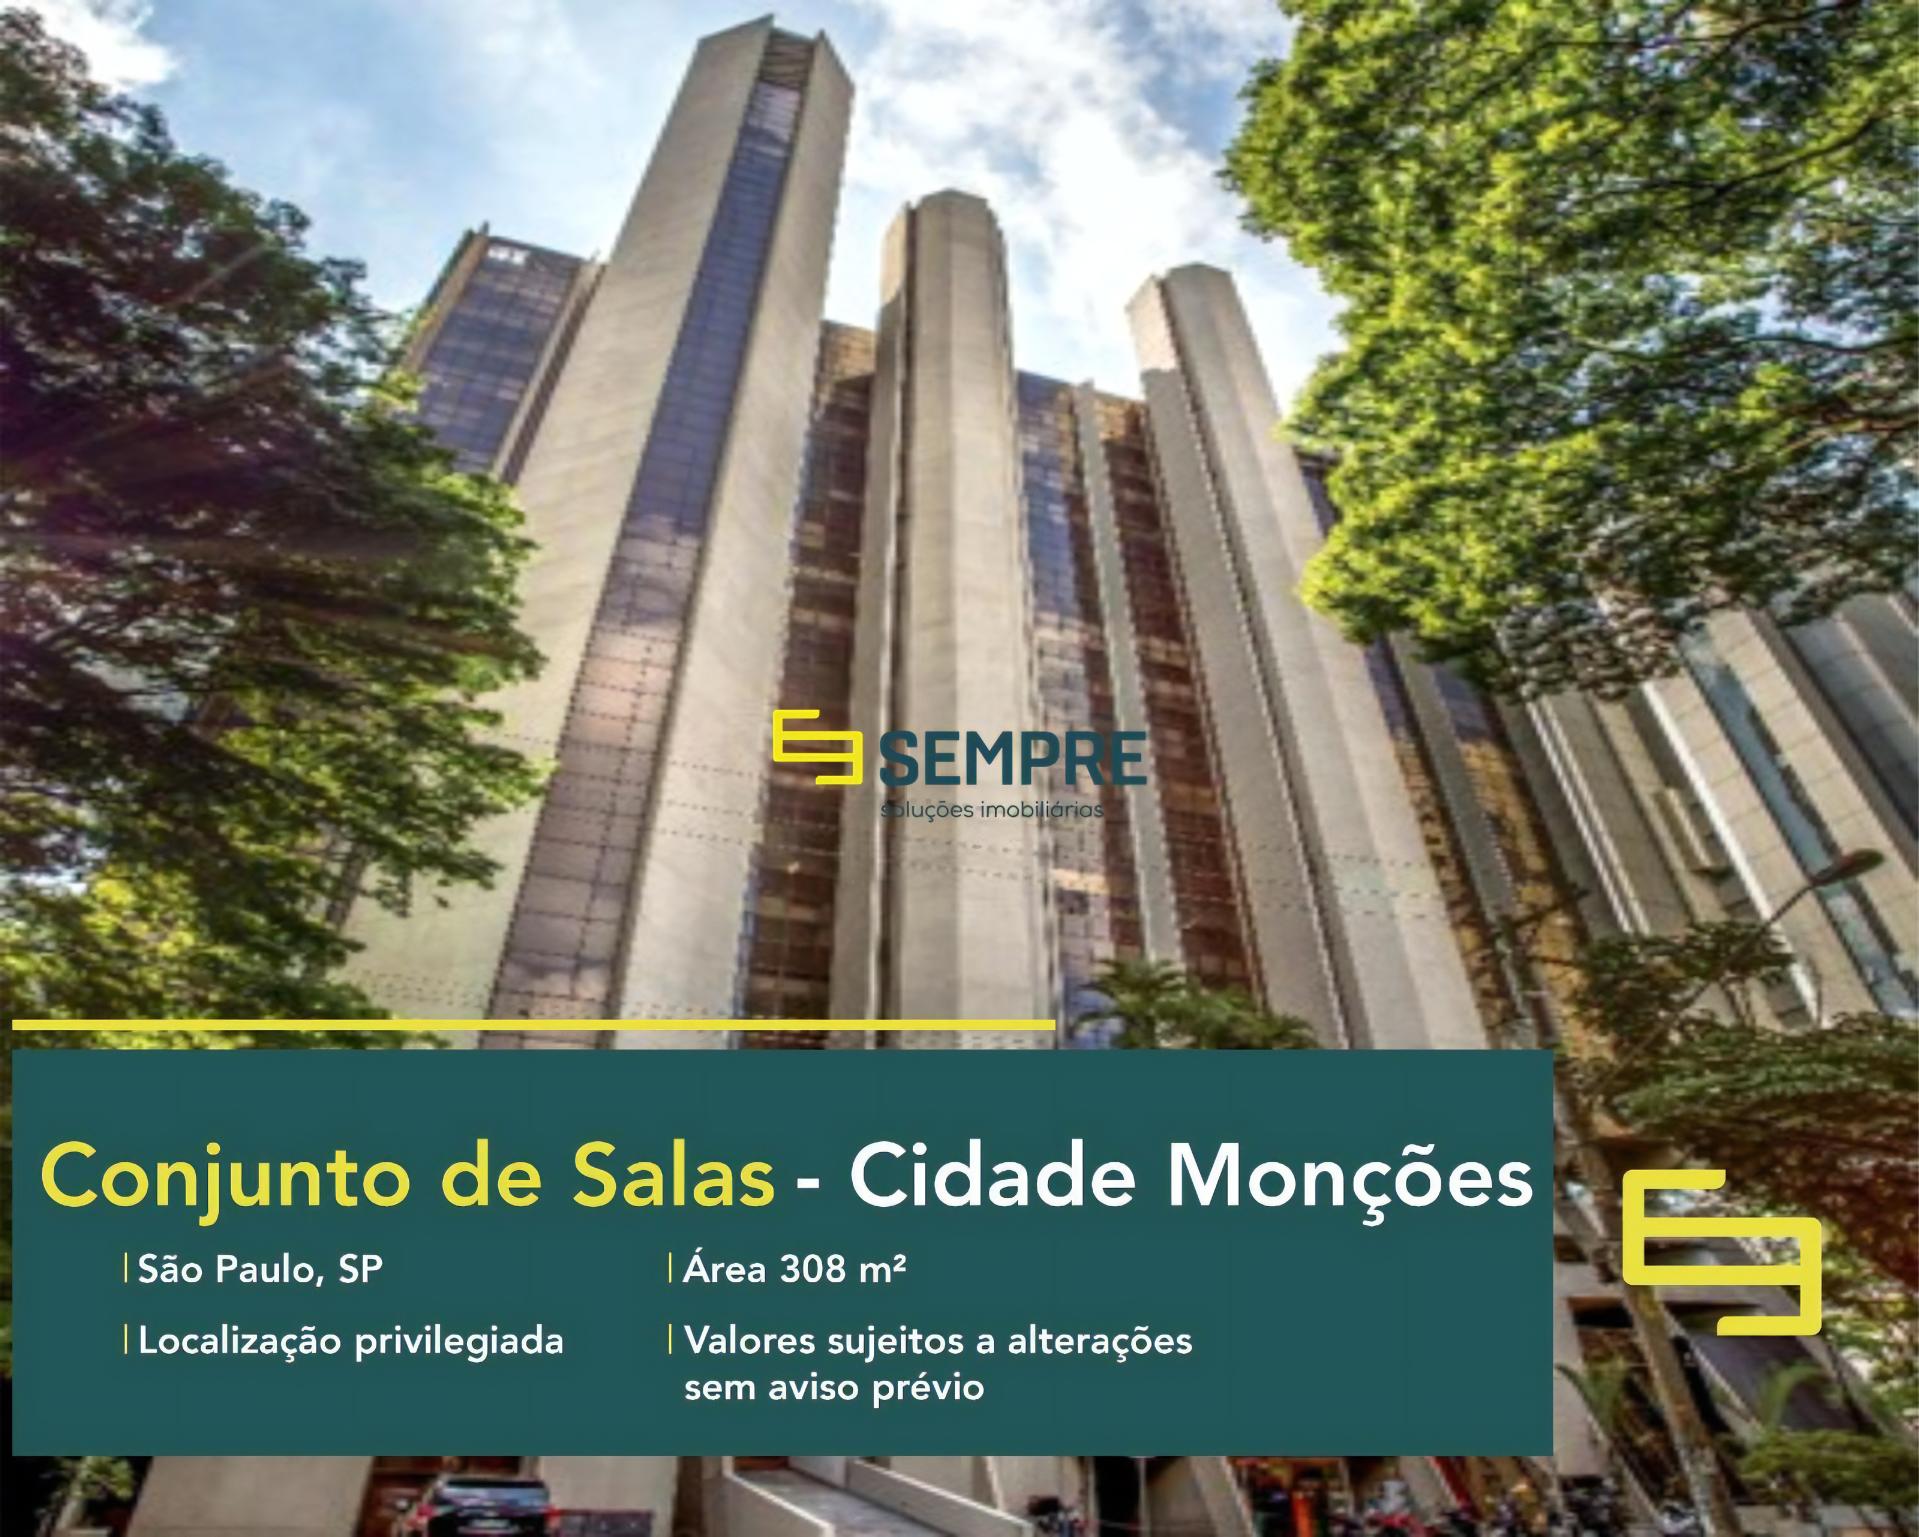 Conjunto de salas comerciais em Monções para alugar - São Paulo, excelente localização. O estabelecimento comercial conta com área de 308 m².